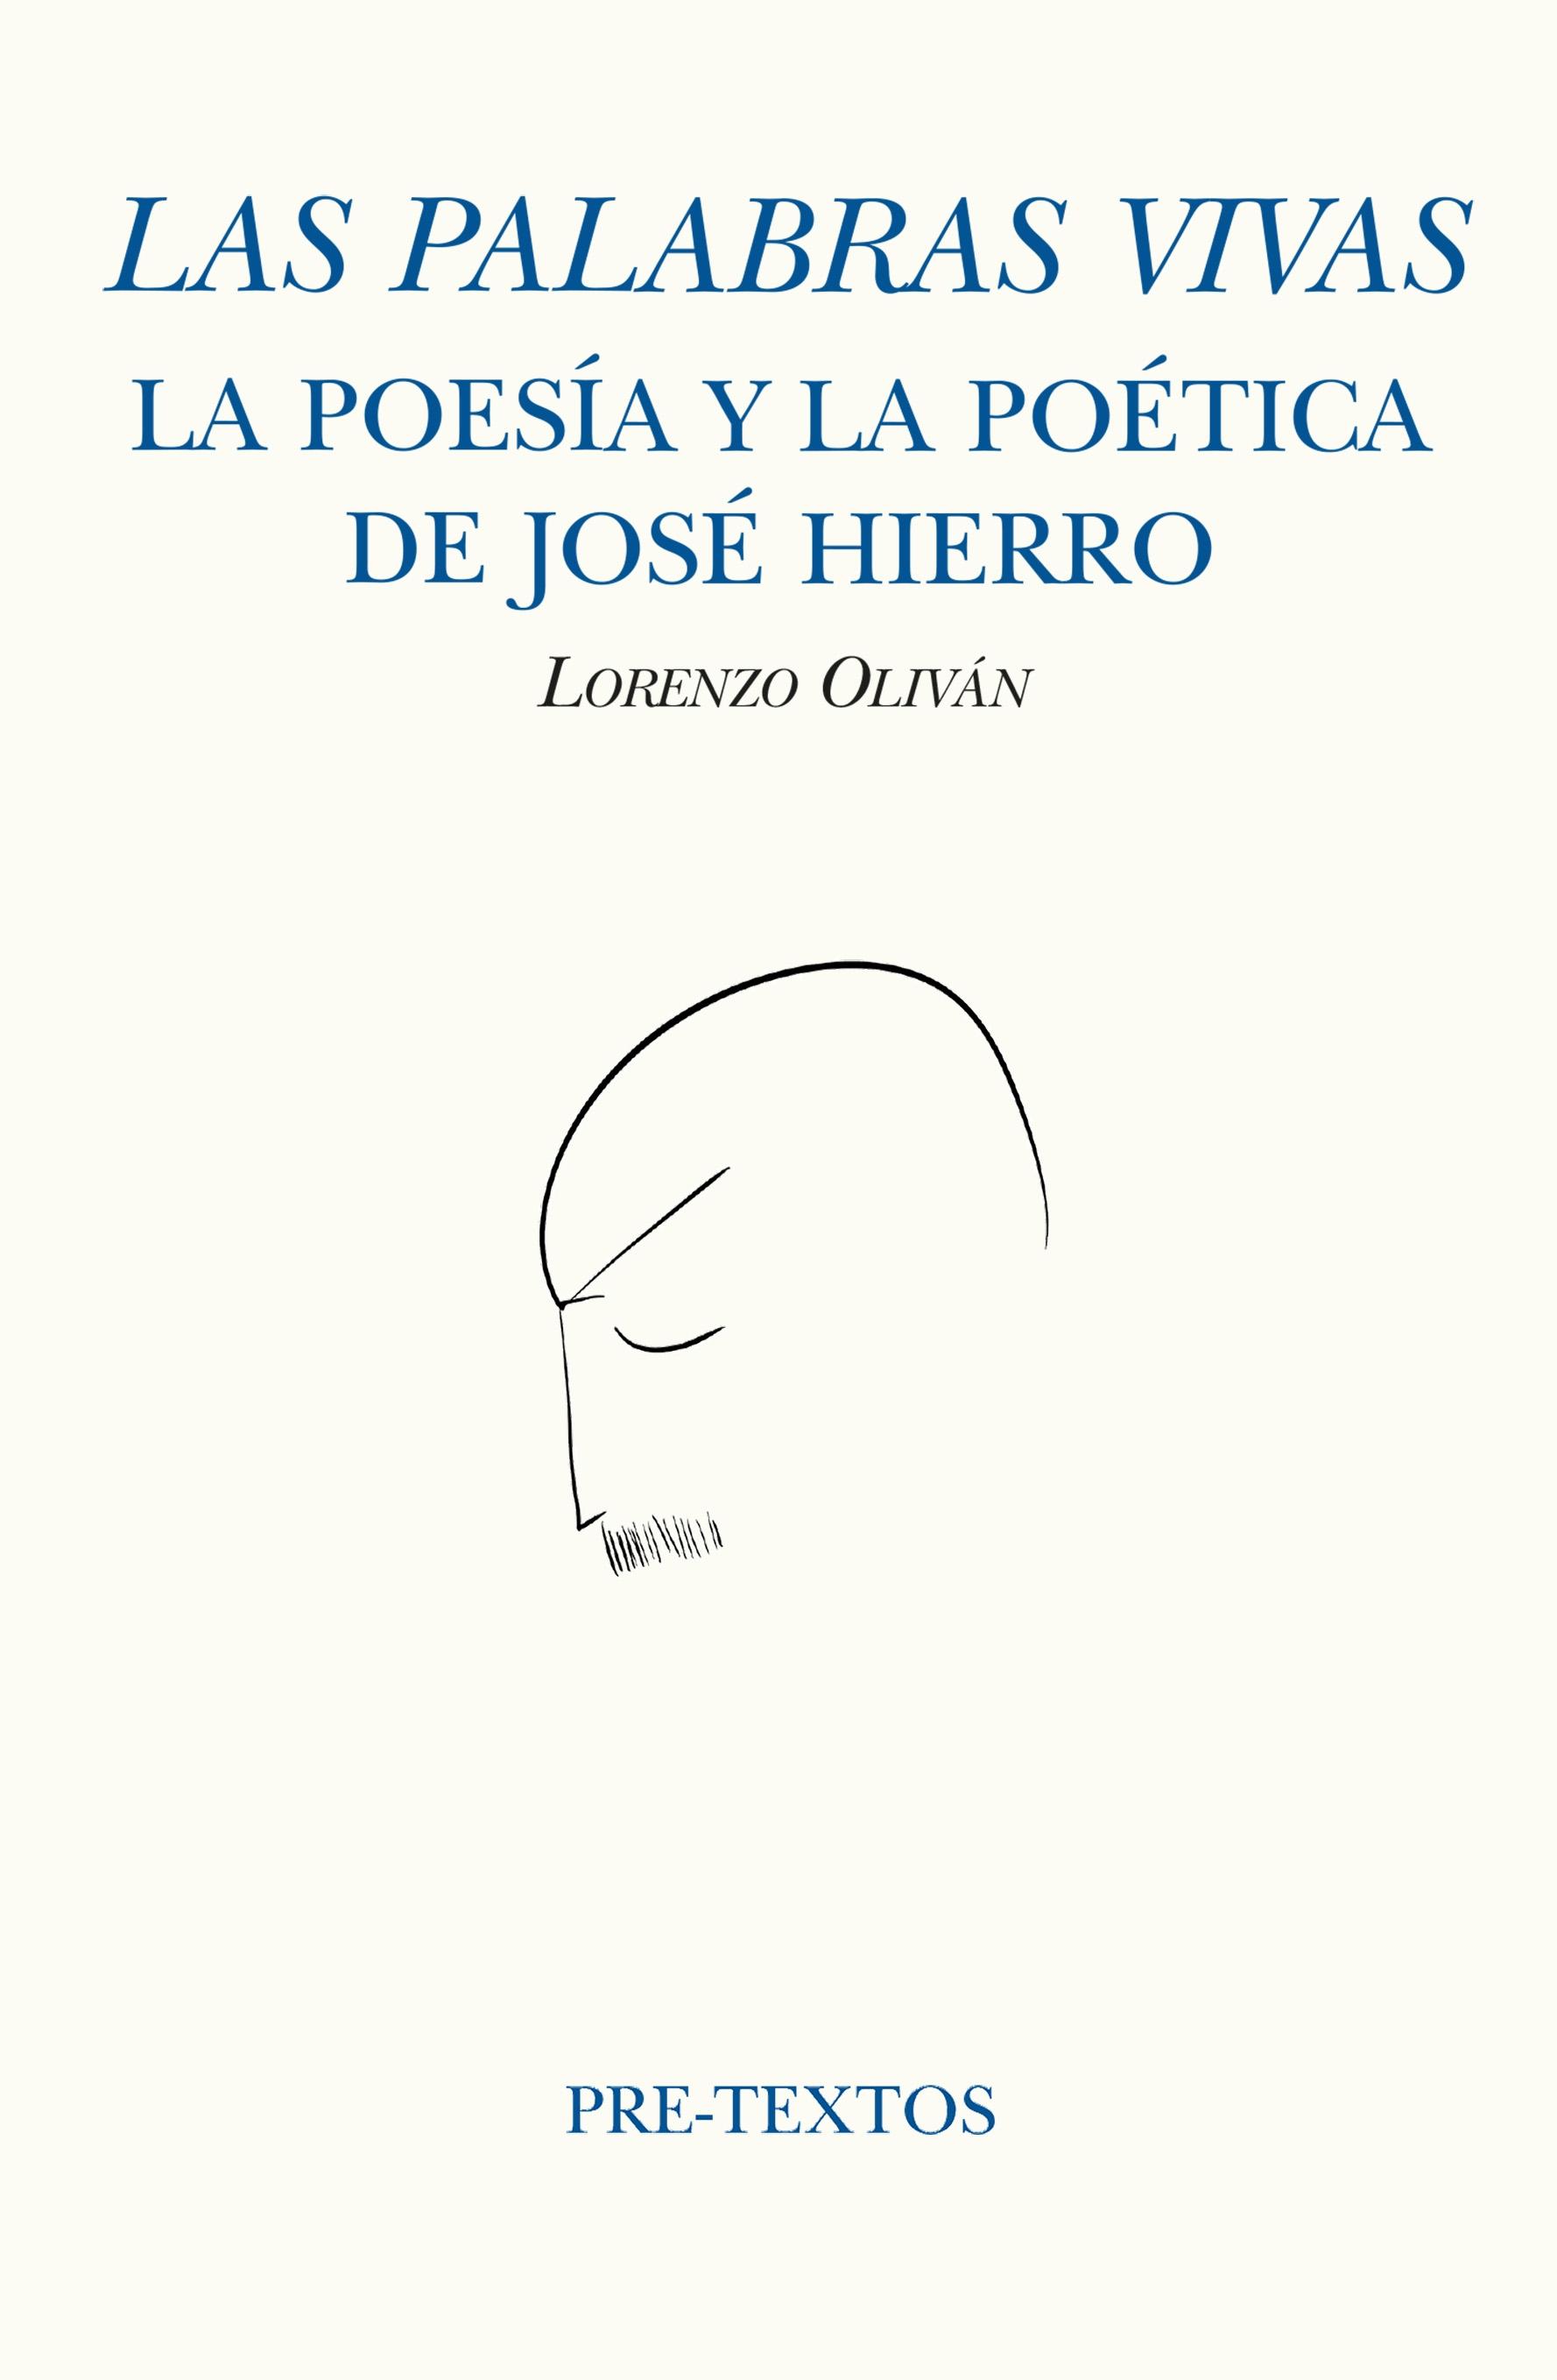 Las Palabras Vivas "La Poesía y la Poética de José Hierro"